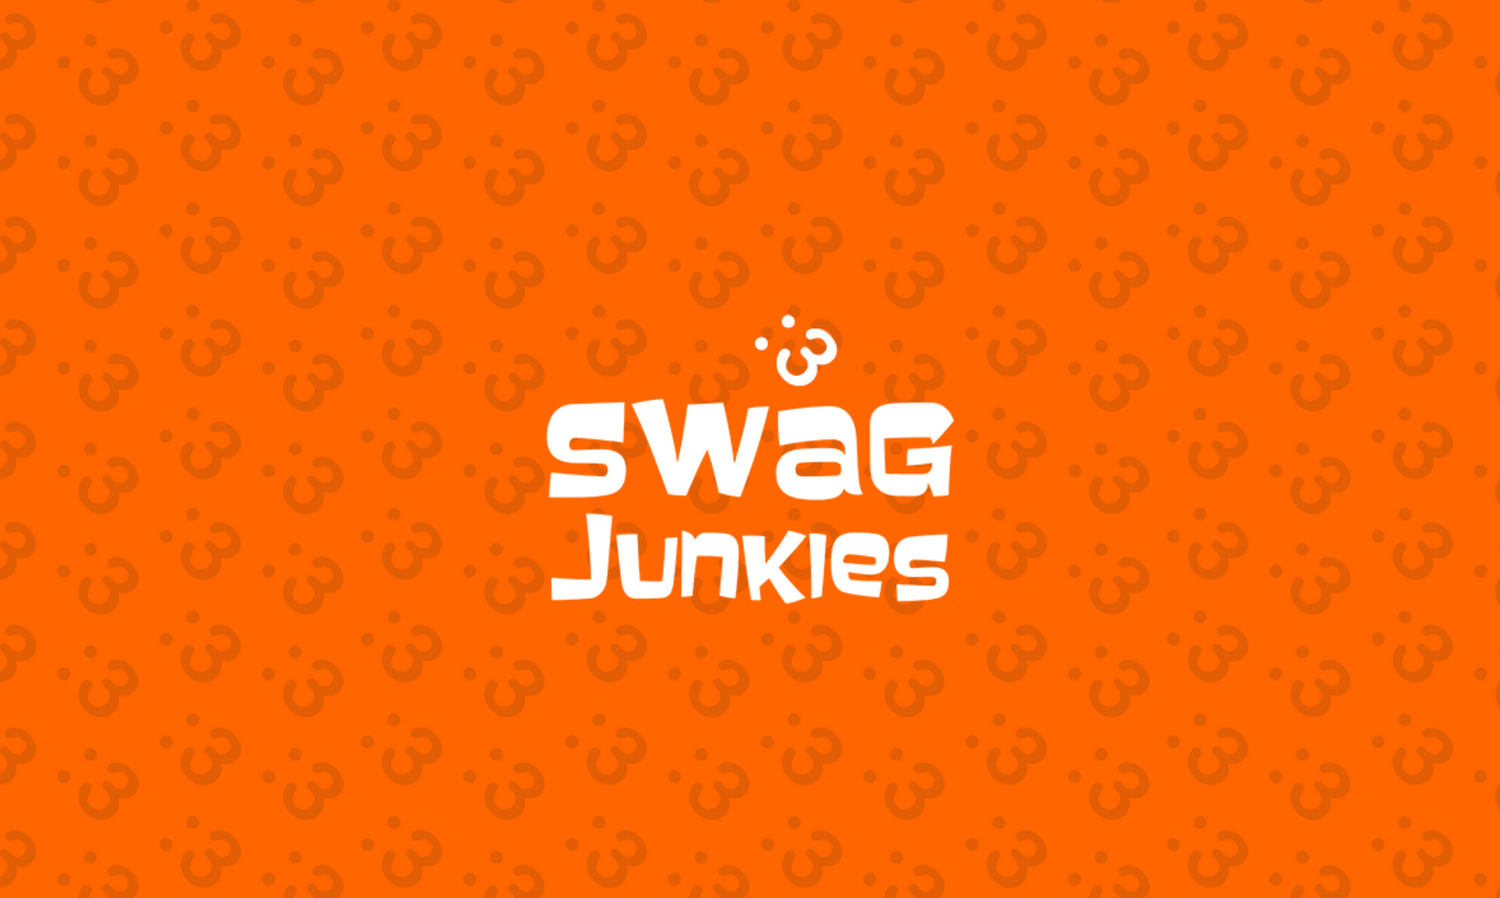 Swag Junkies